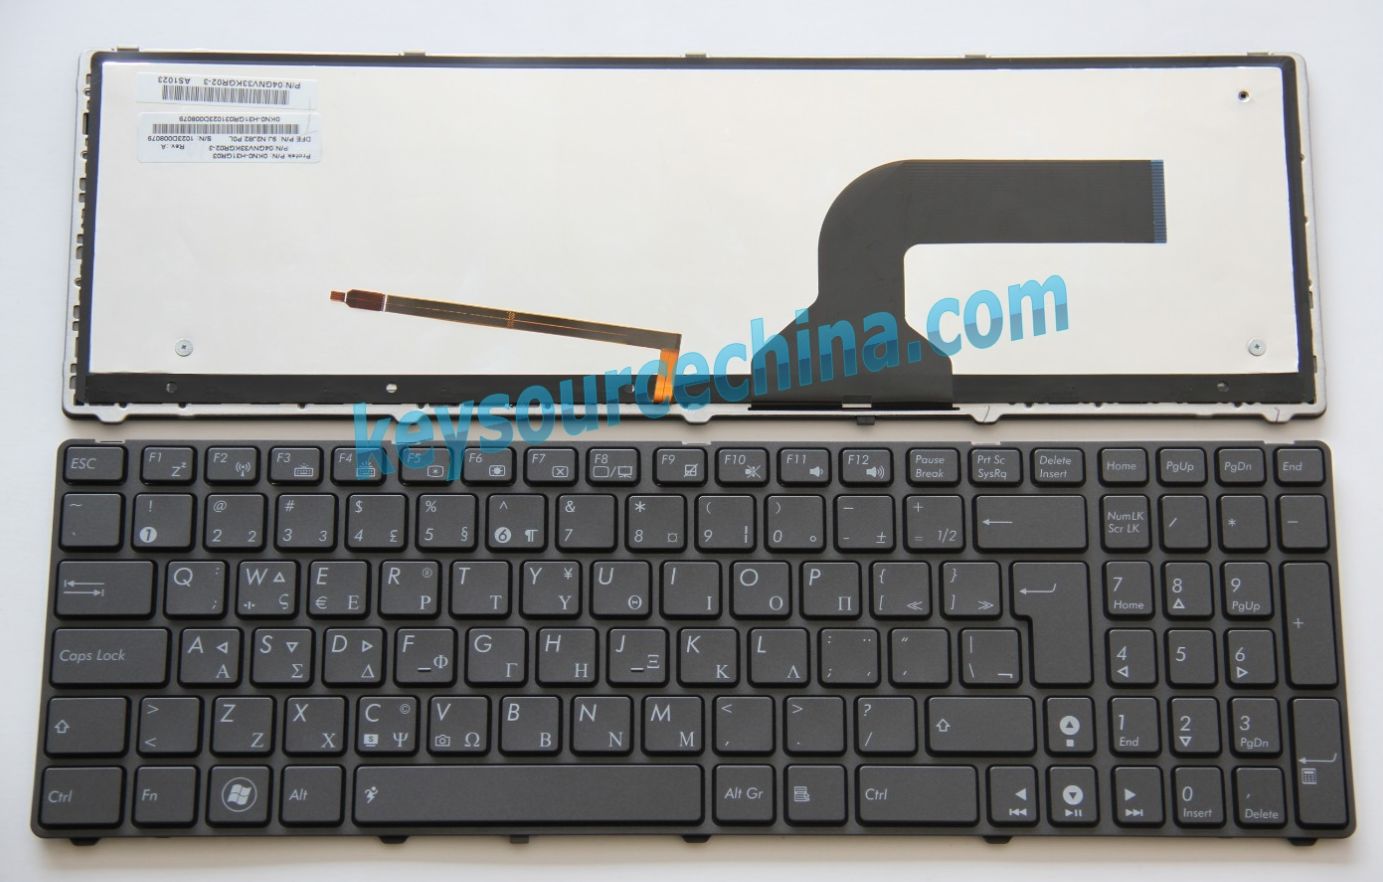 Asus G51 G51J G51Jx G53 G53J G53SX G60 G60J G60JX G73 G73J G73SW UX50V U50VG VX7 Ελληνικό πληκτρολόγιο Greek/GR Keyboard backlit gray